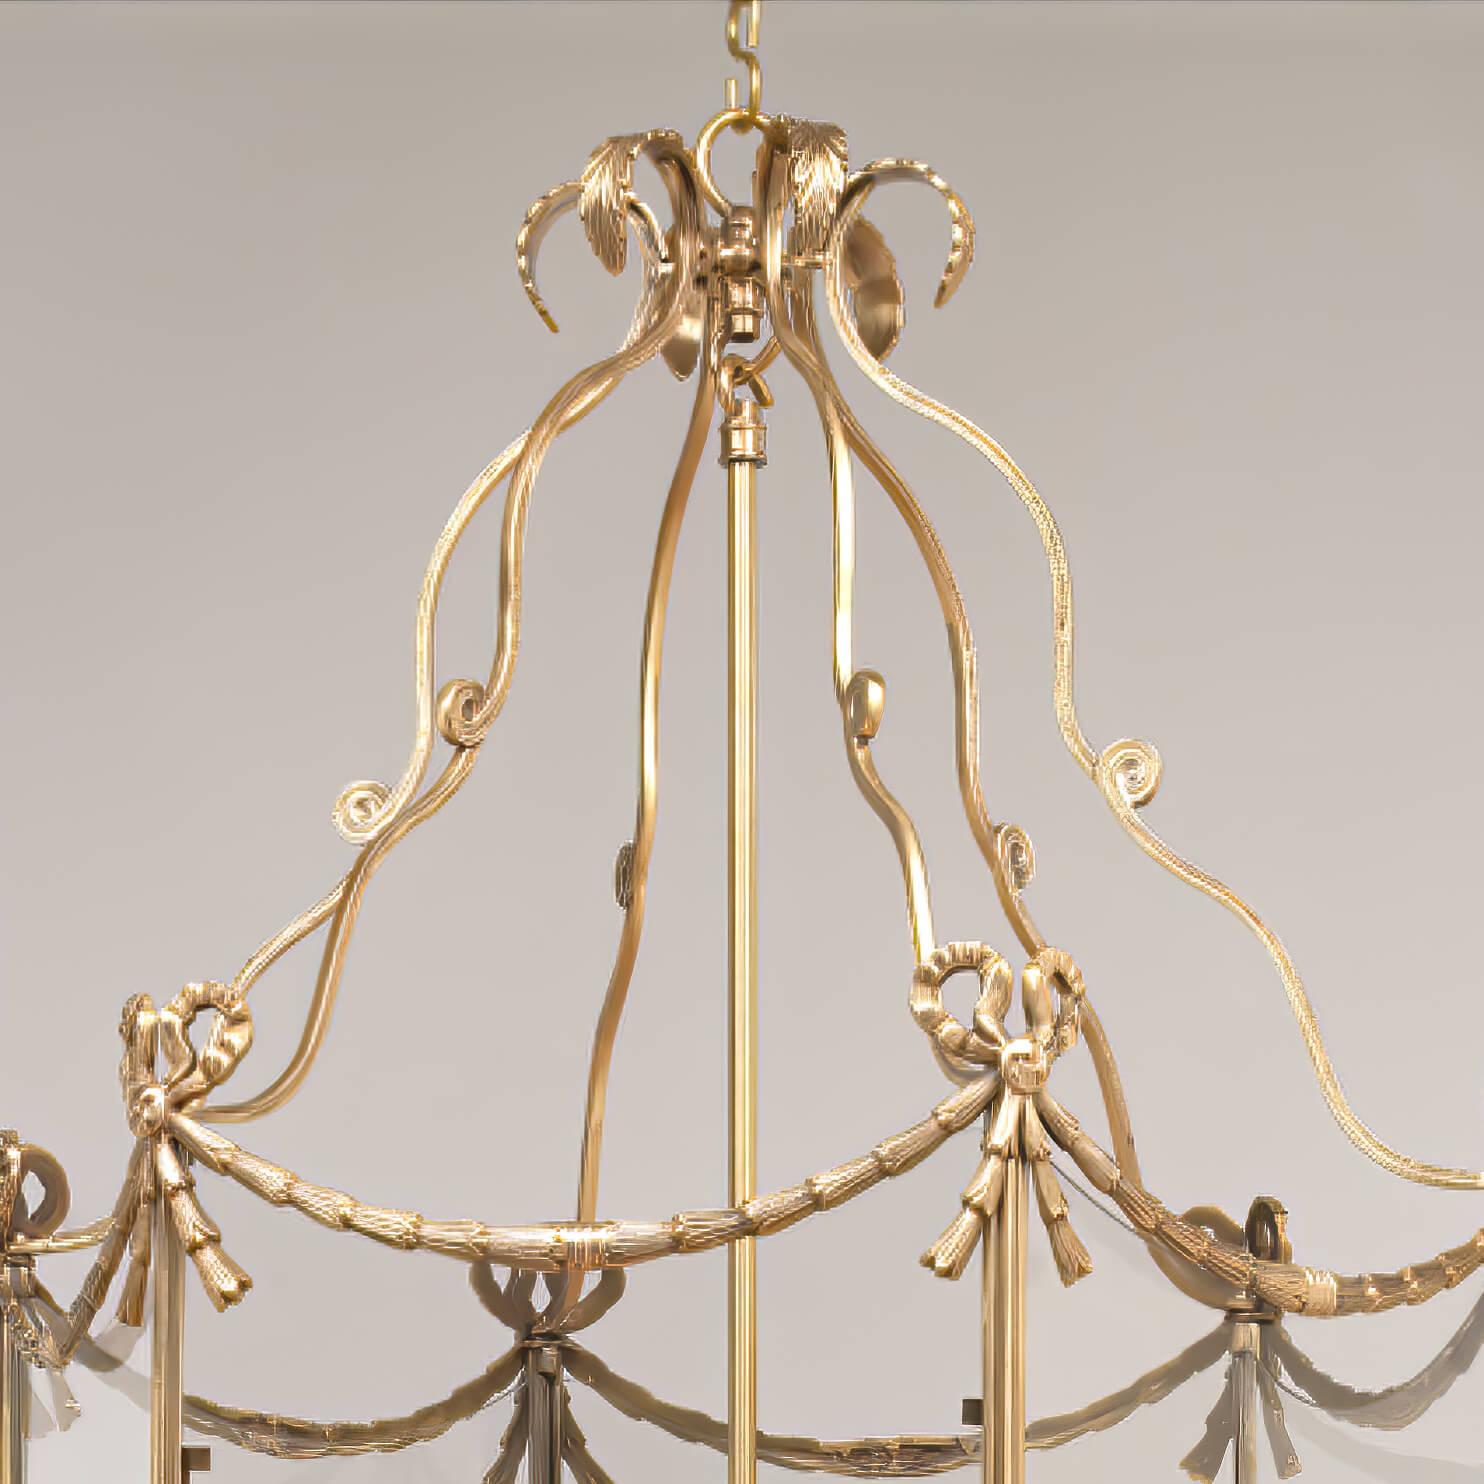 Grande lanterne de salle en laiton à cinq lumières de style néoclassique suédois, avec des ornements de style XVIIIe siècle. La couronne en pointe de feuille surplombe des supports à enroulement et un cadre hexagonal décoré de nœuds papillons, de